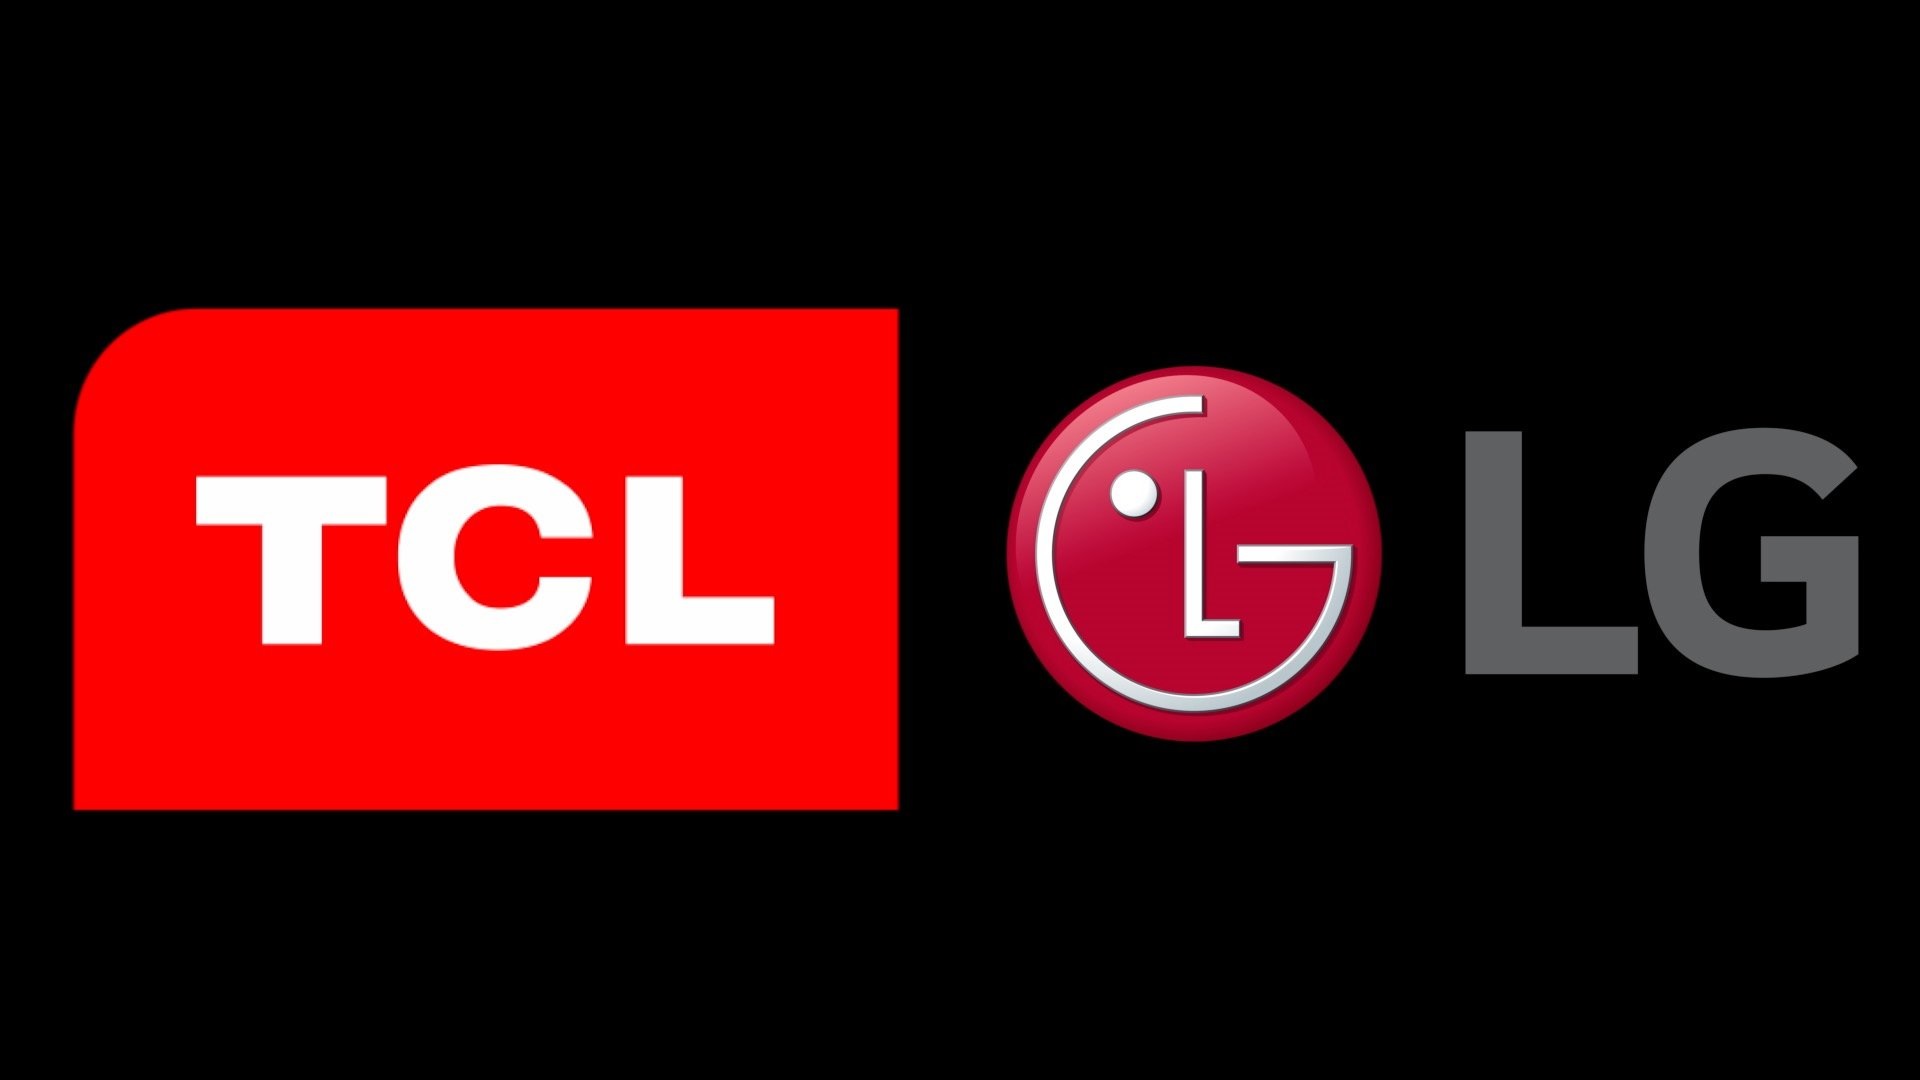 TCL vs LG